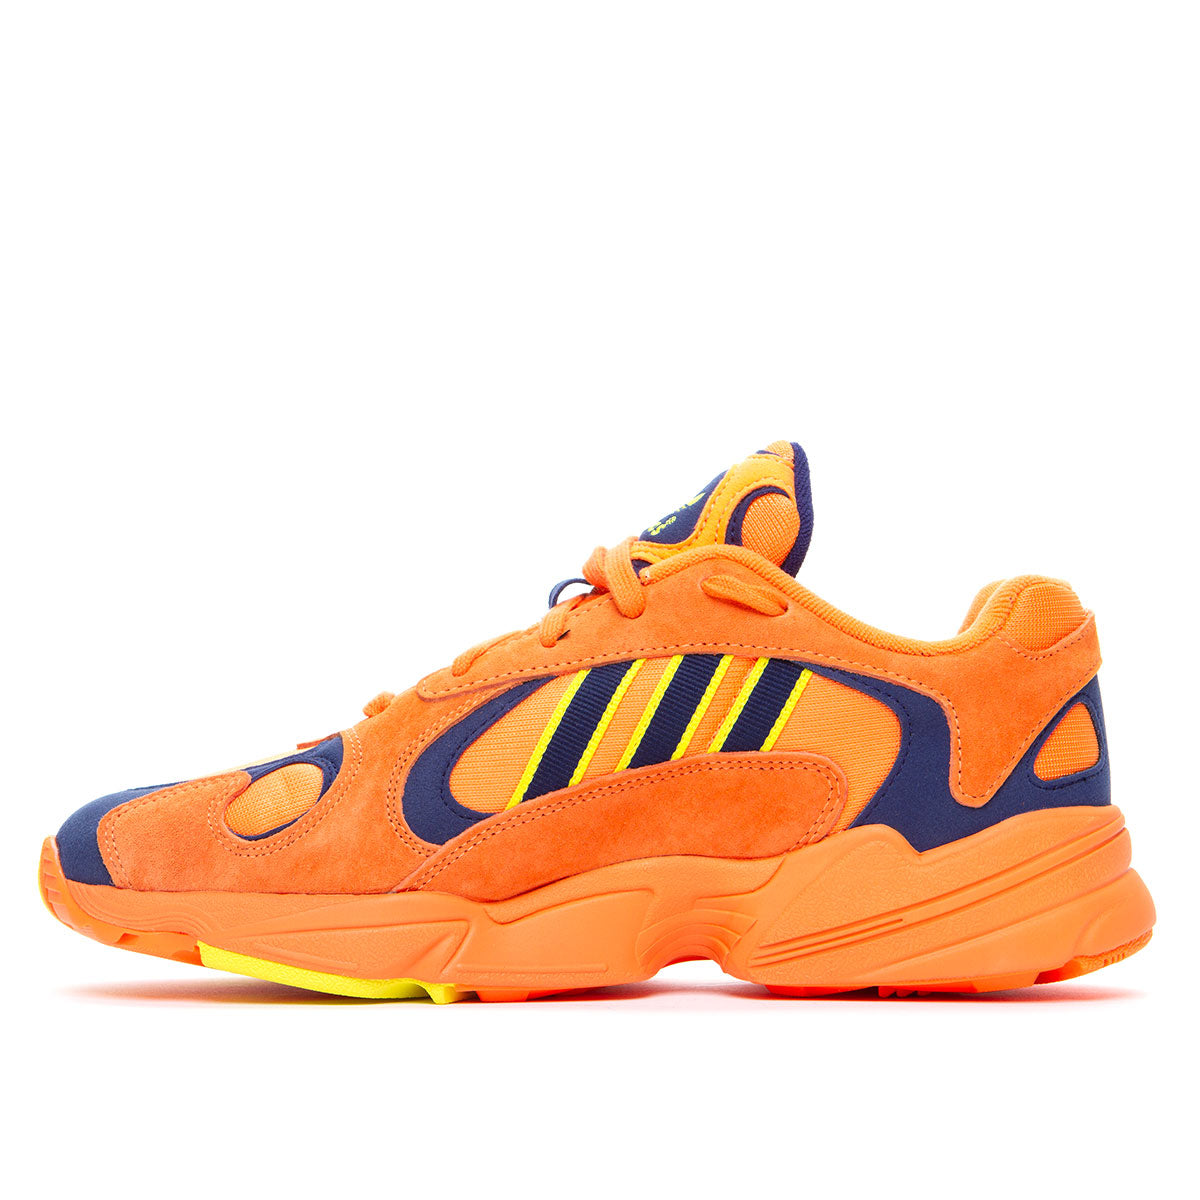 Adidas Yung-1 Orange 